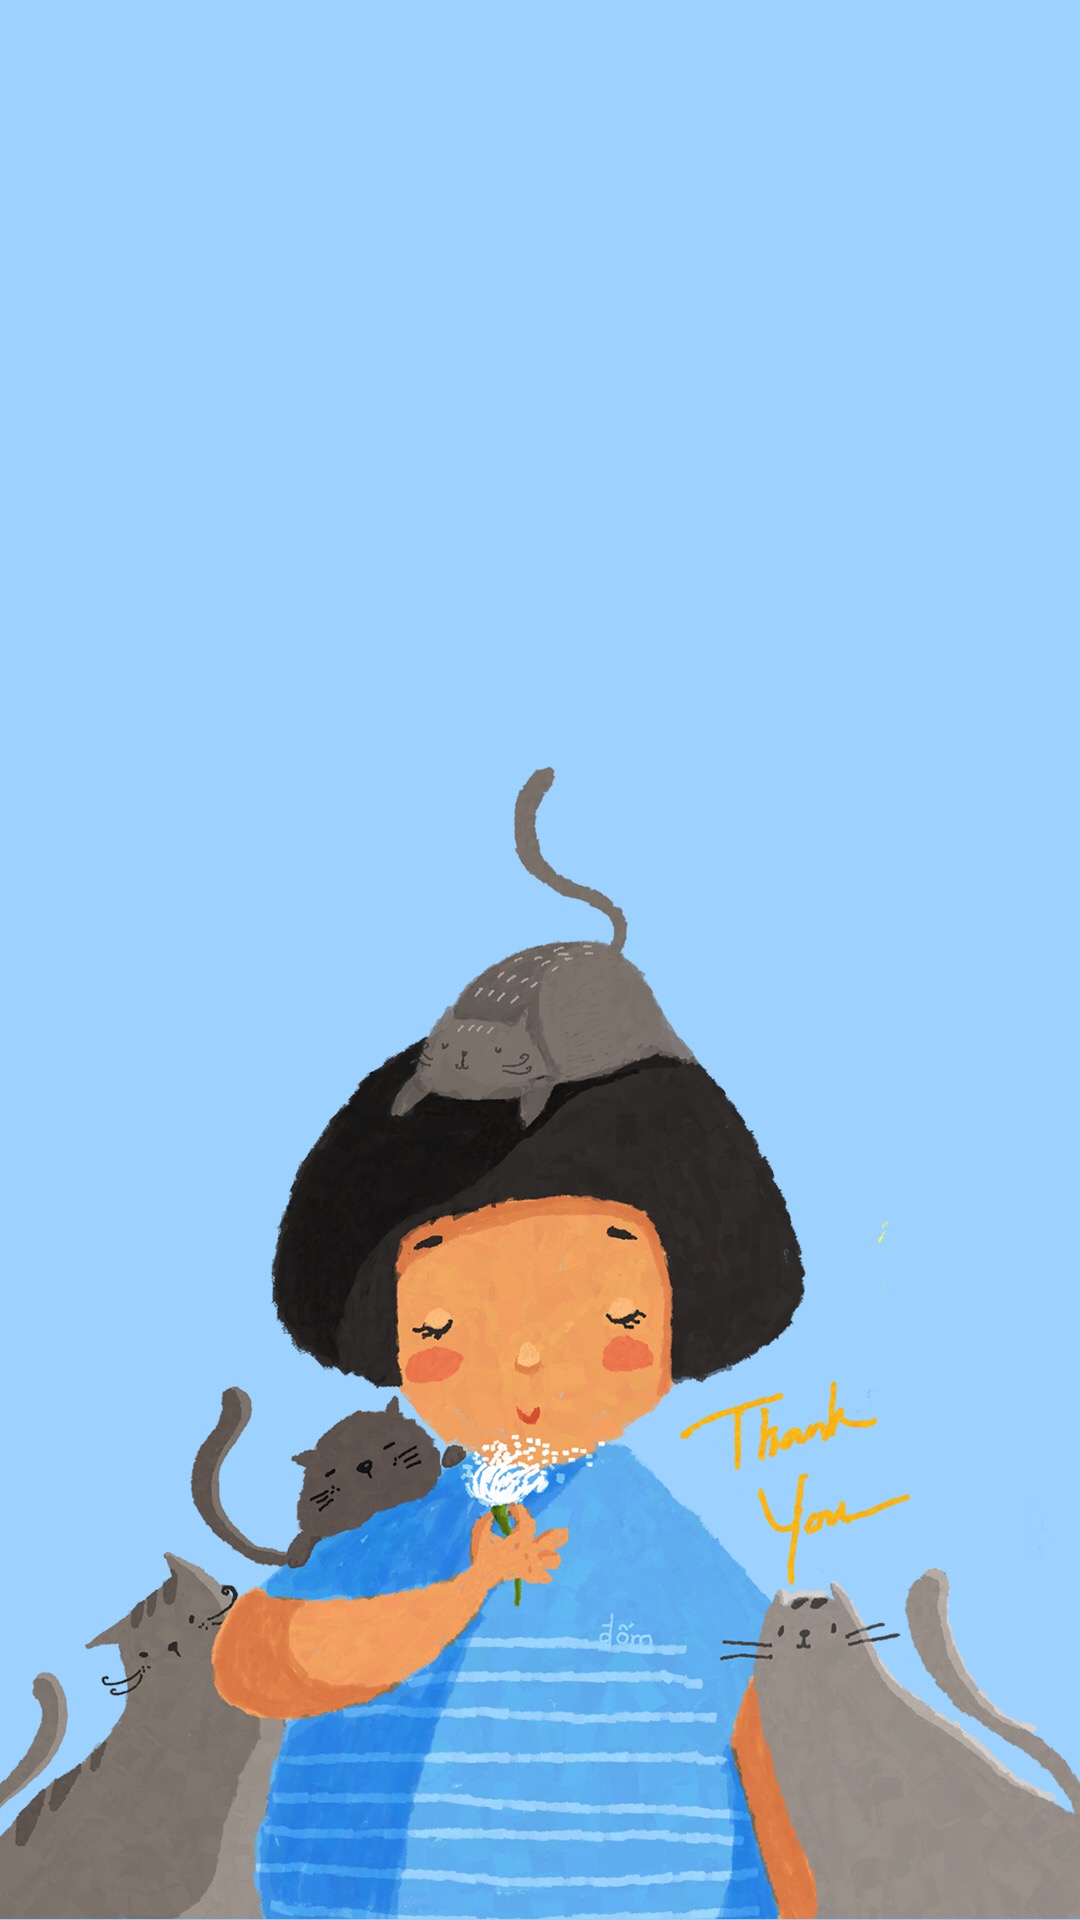 蘑菇头女孩猫咪蓝色手绘插画苹果手机高清壁纸,情侣手机壁纸高清